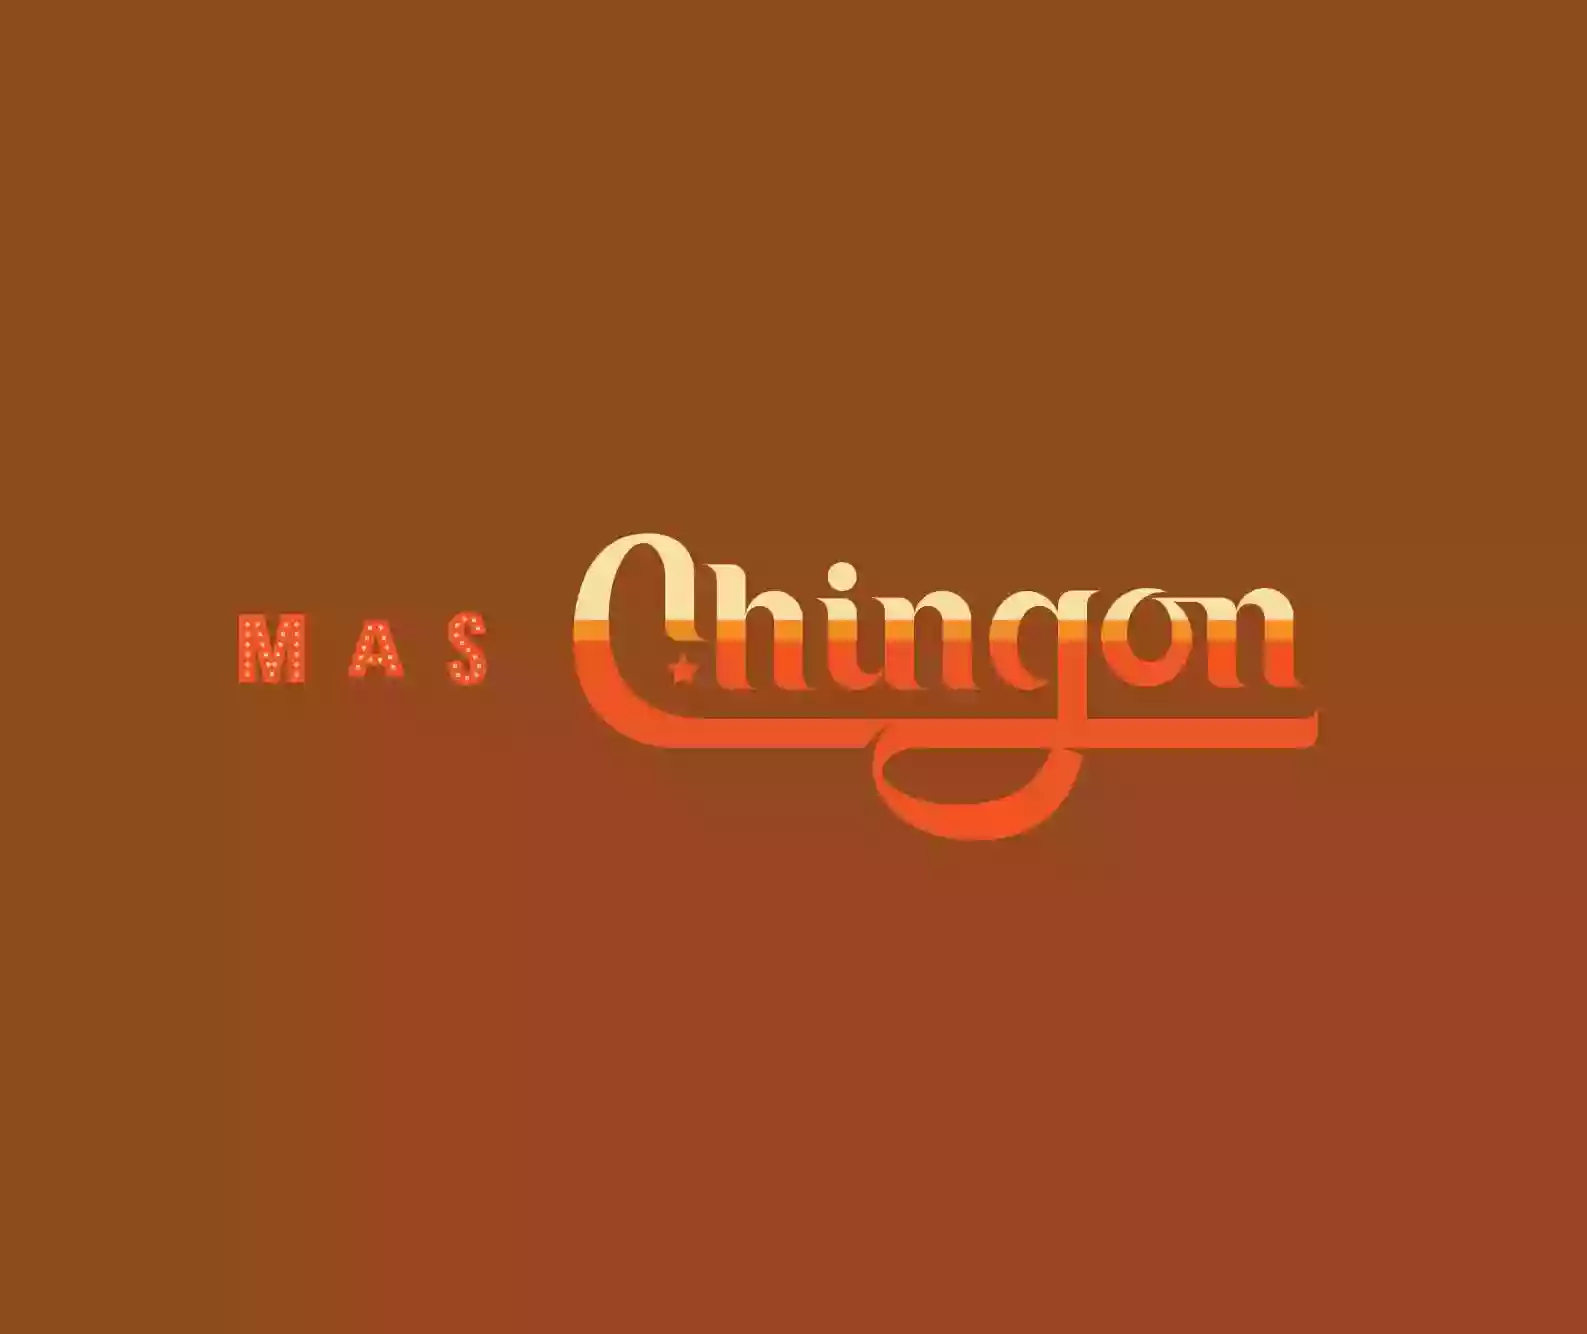 Mas Chingon - Shadowlake